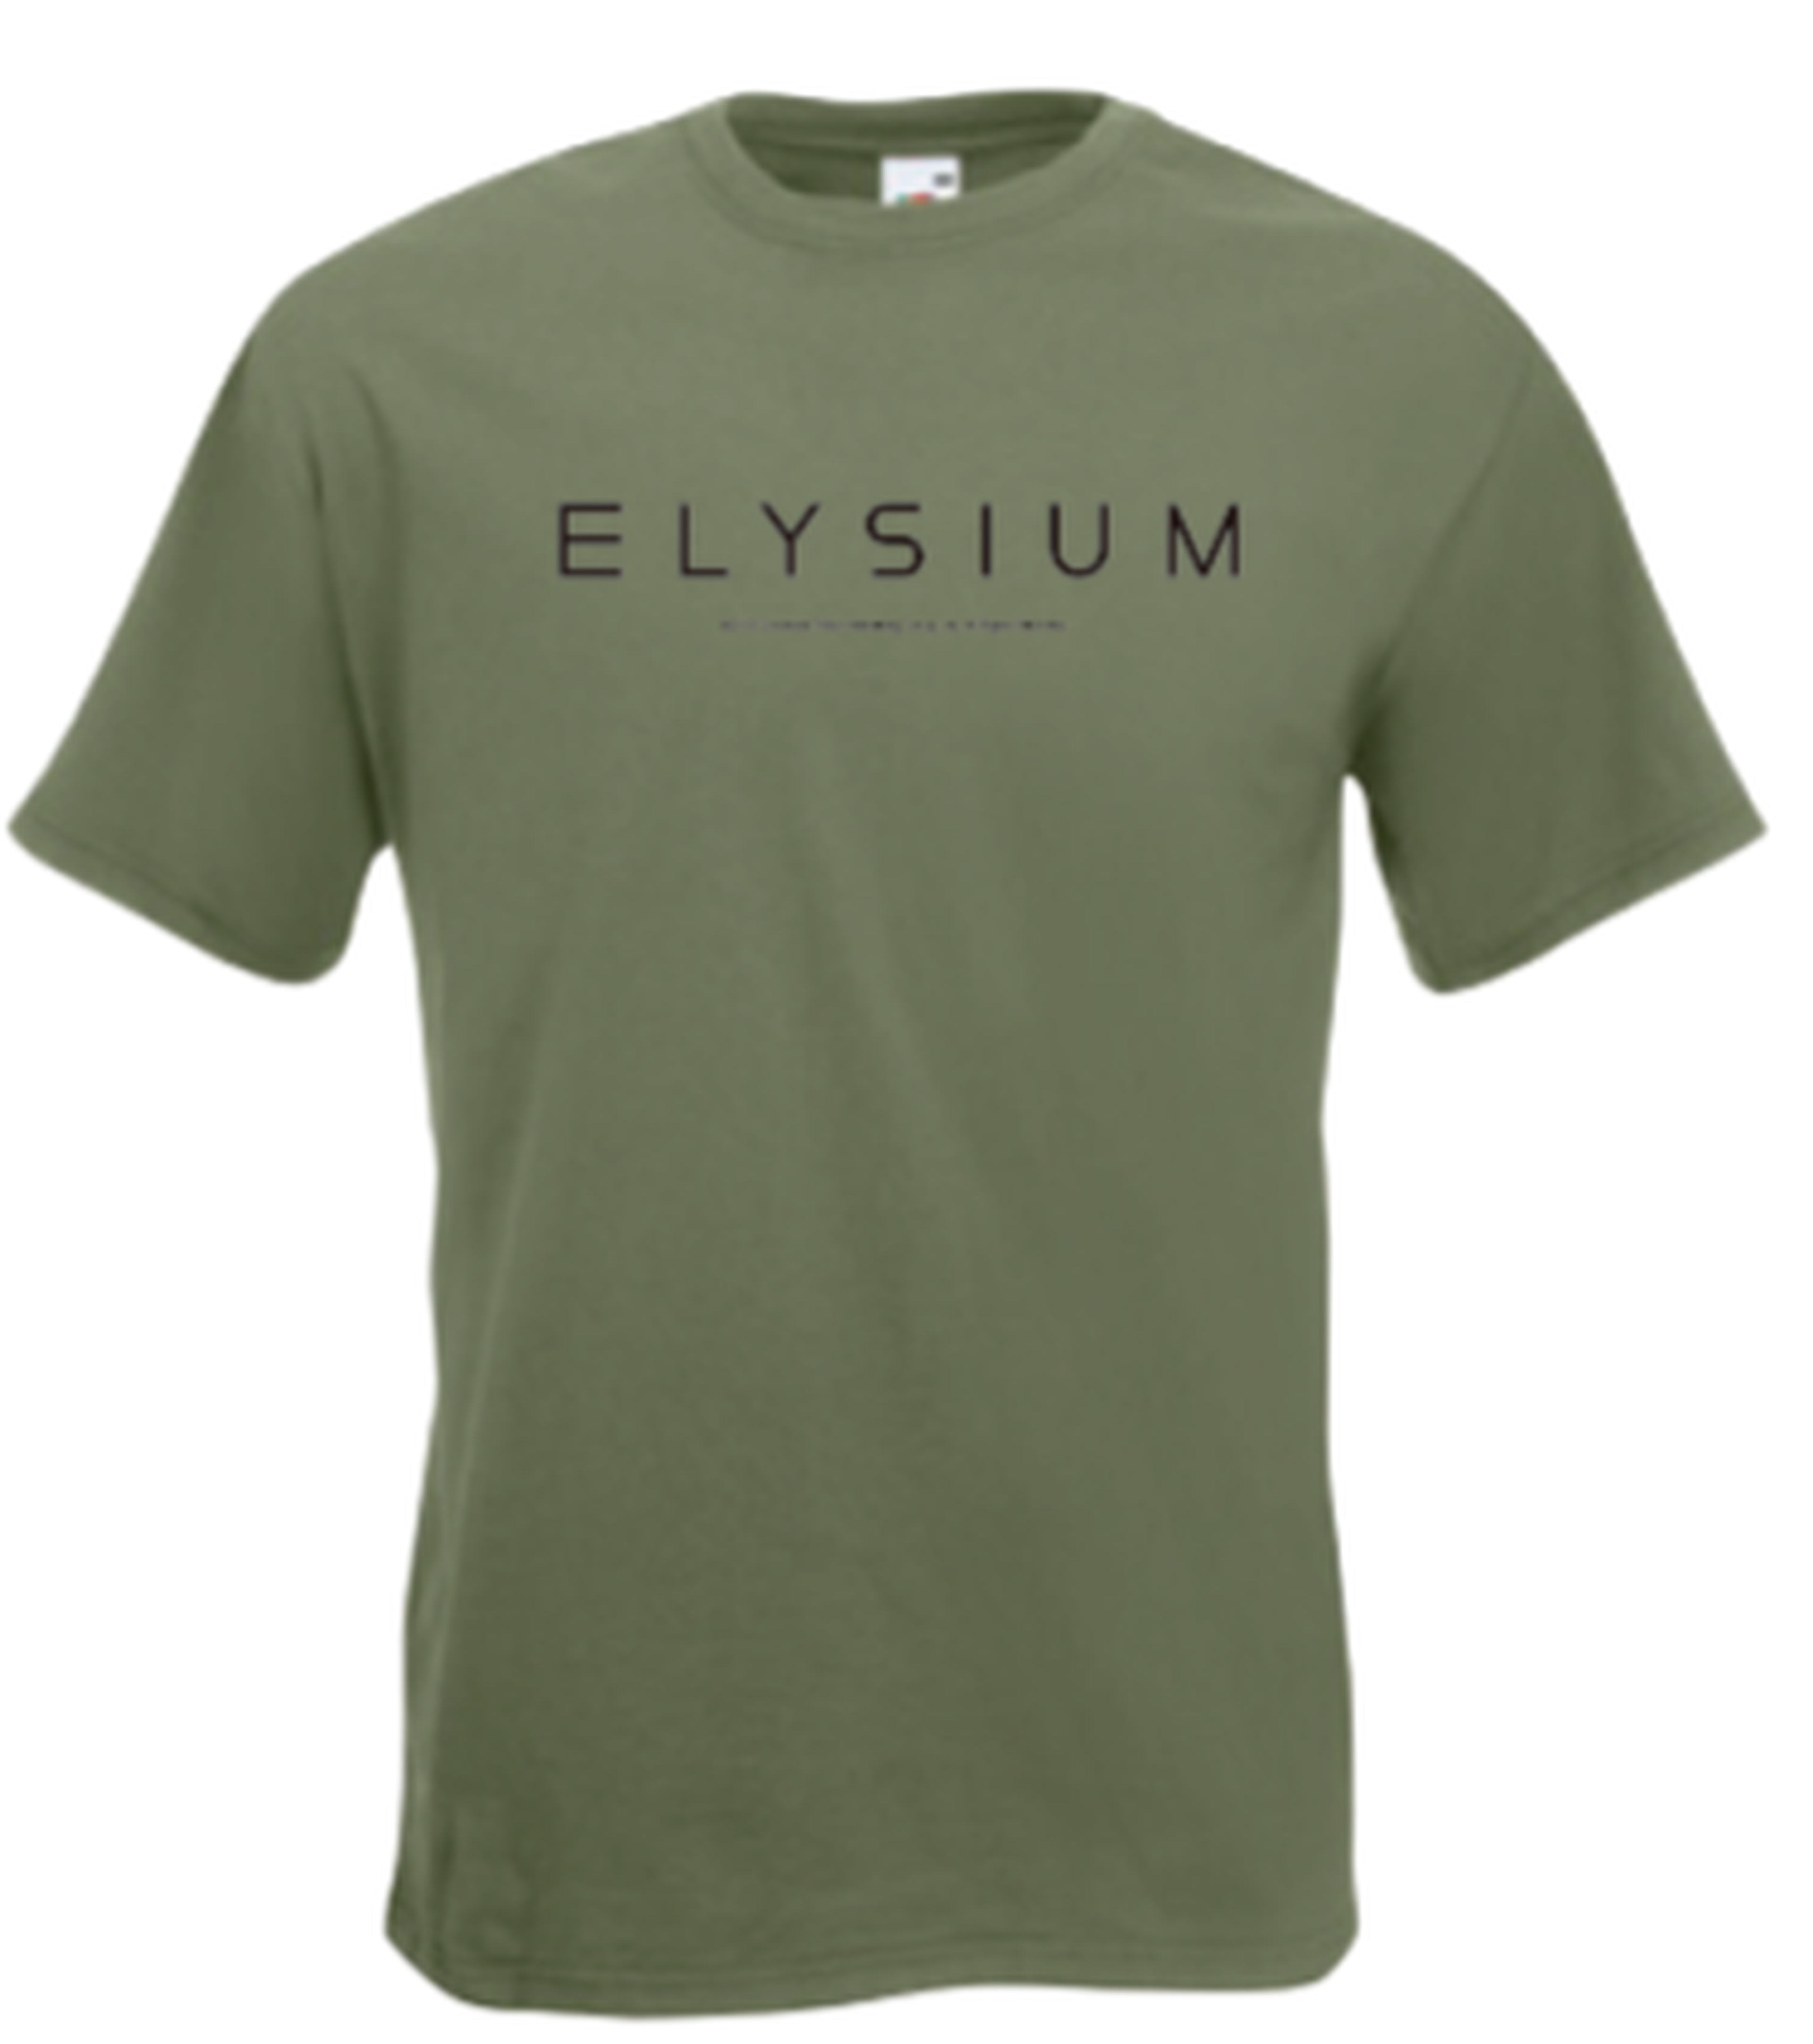 Concurso: Elysium (Estreno en cines el 16 de agosto)